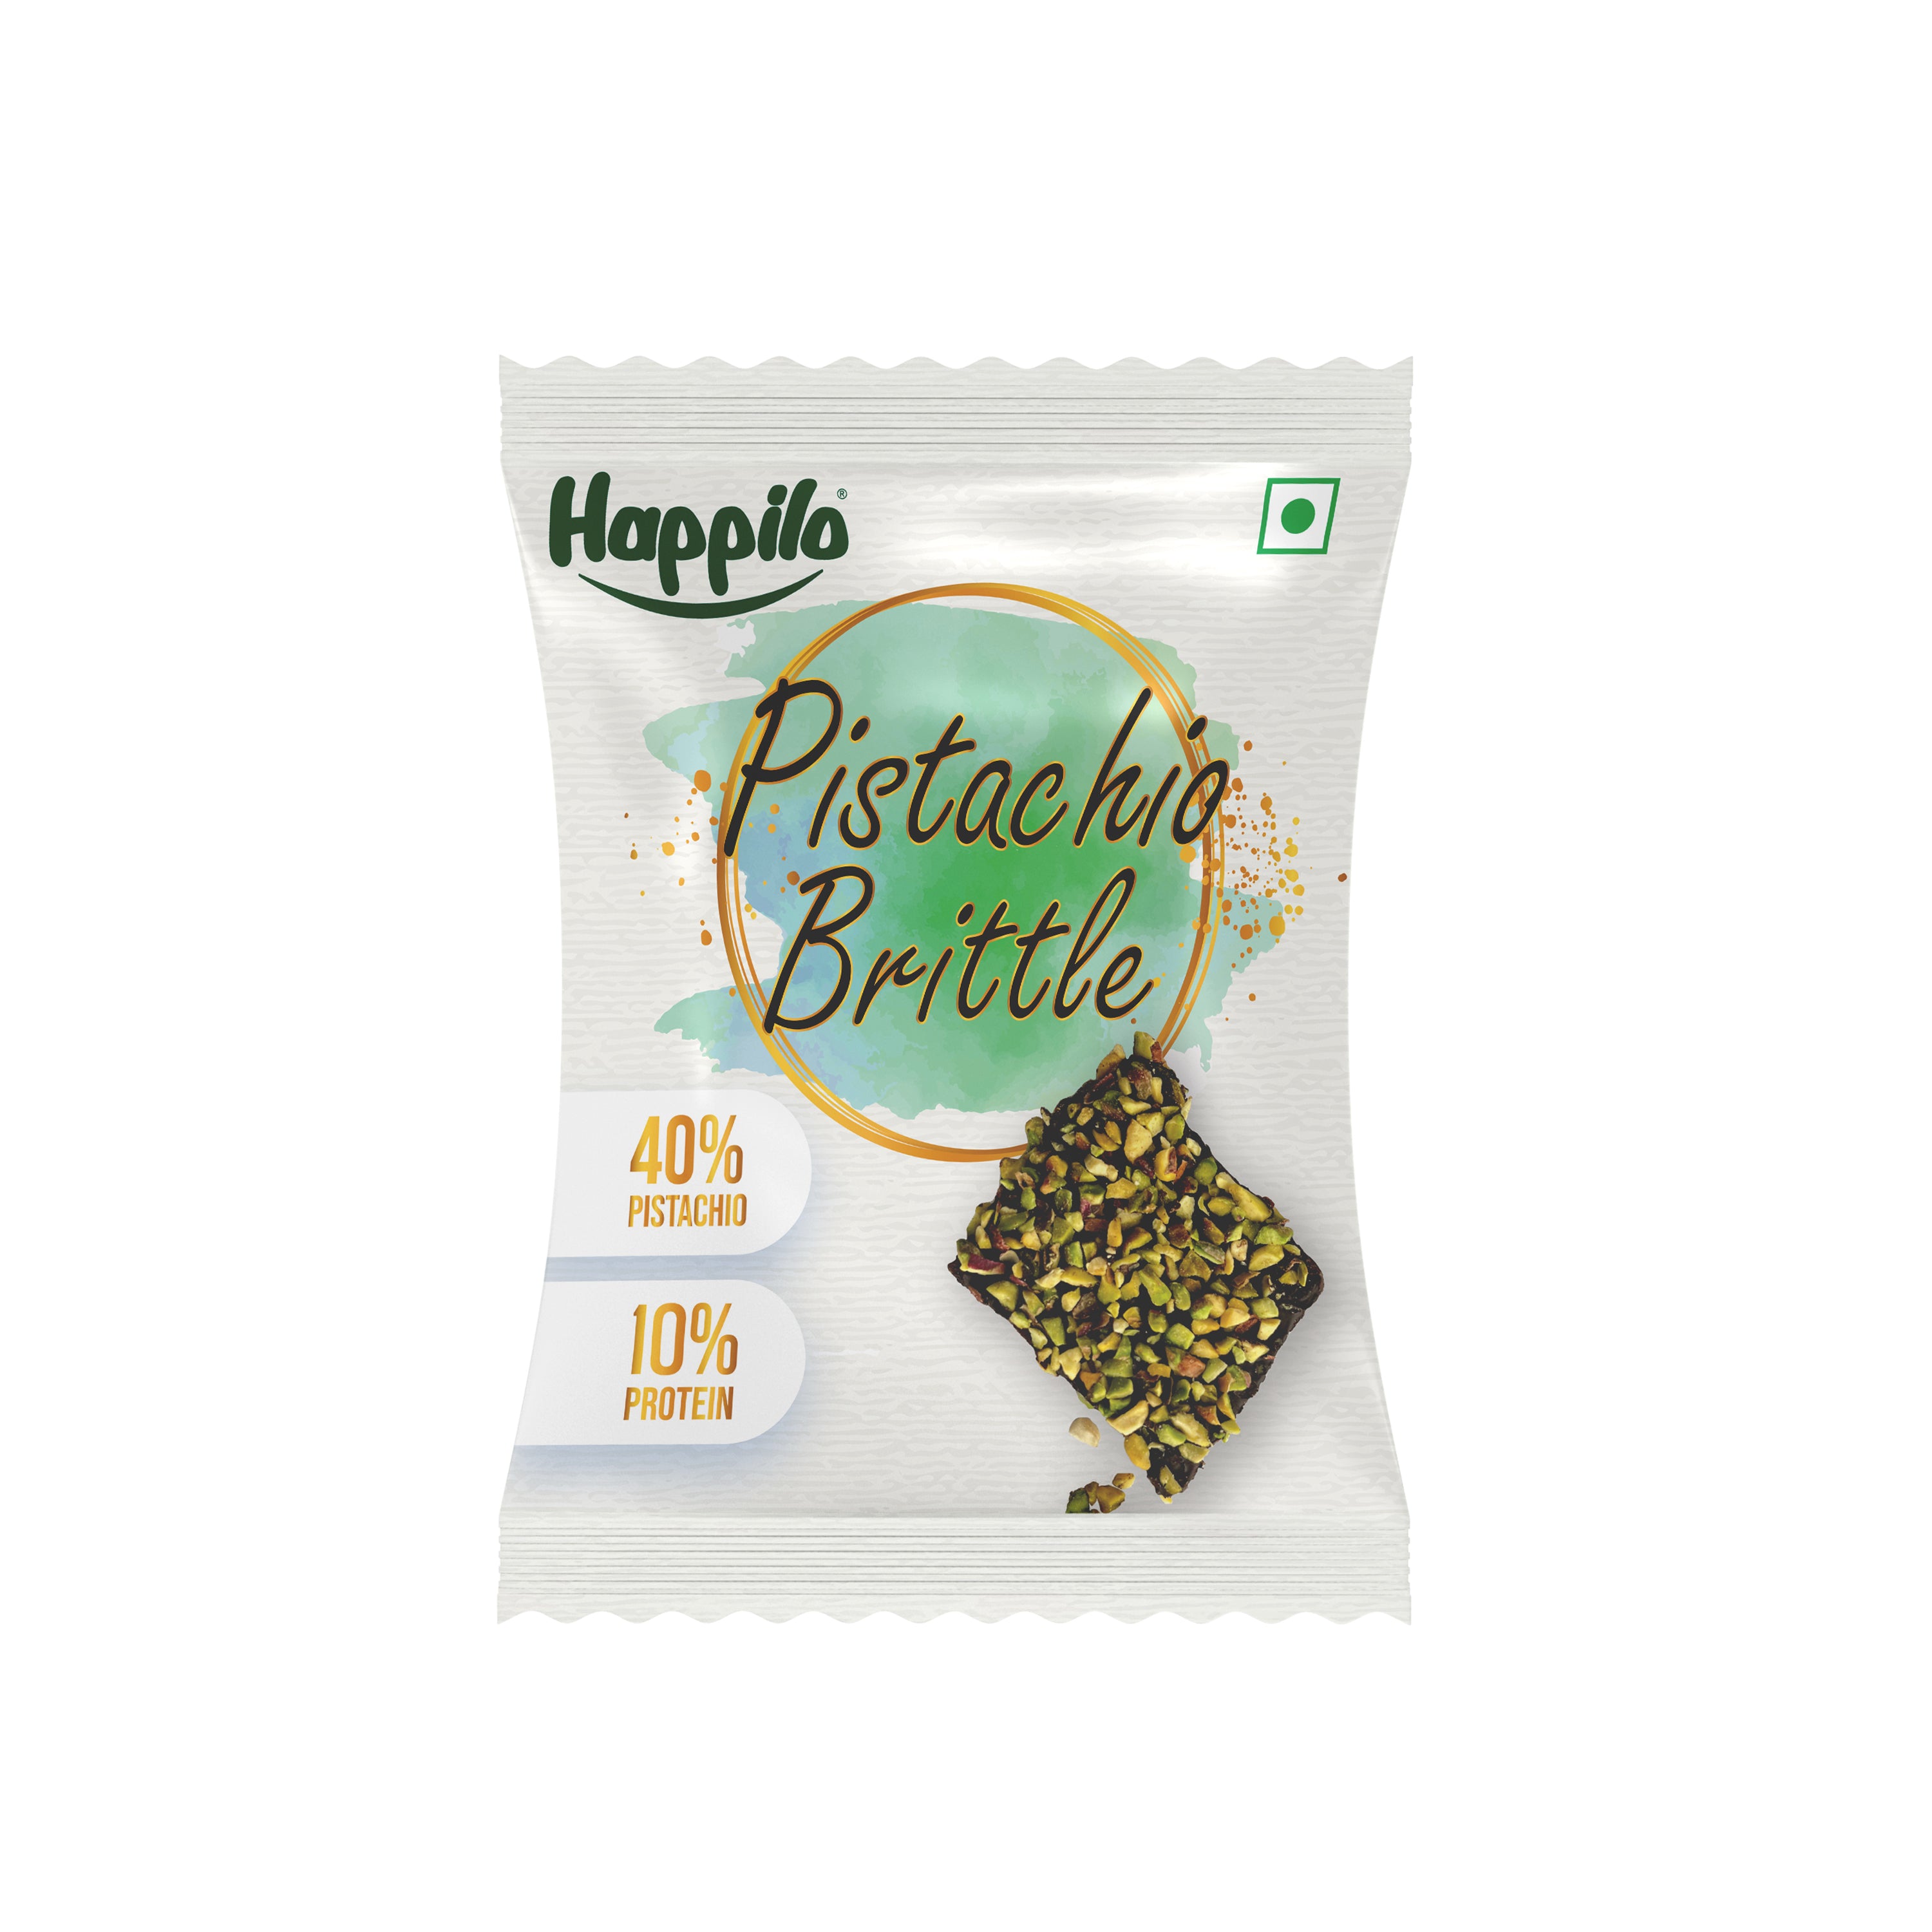 Happilo Premium Assorted Dry Fruit Brittle Celebrations Pack 204g (17gX12) (Almonds, Cashews & Pistachios 4Pcs Each)